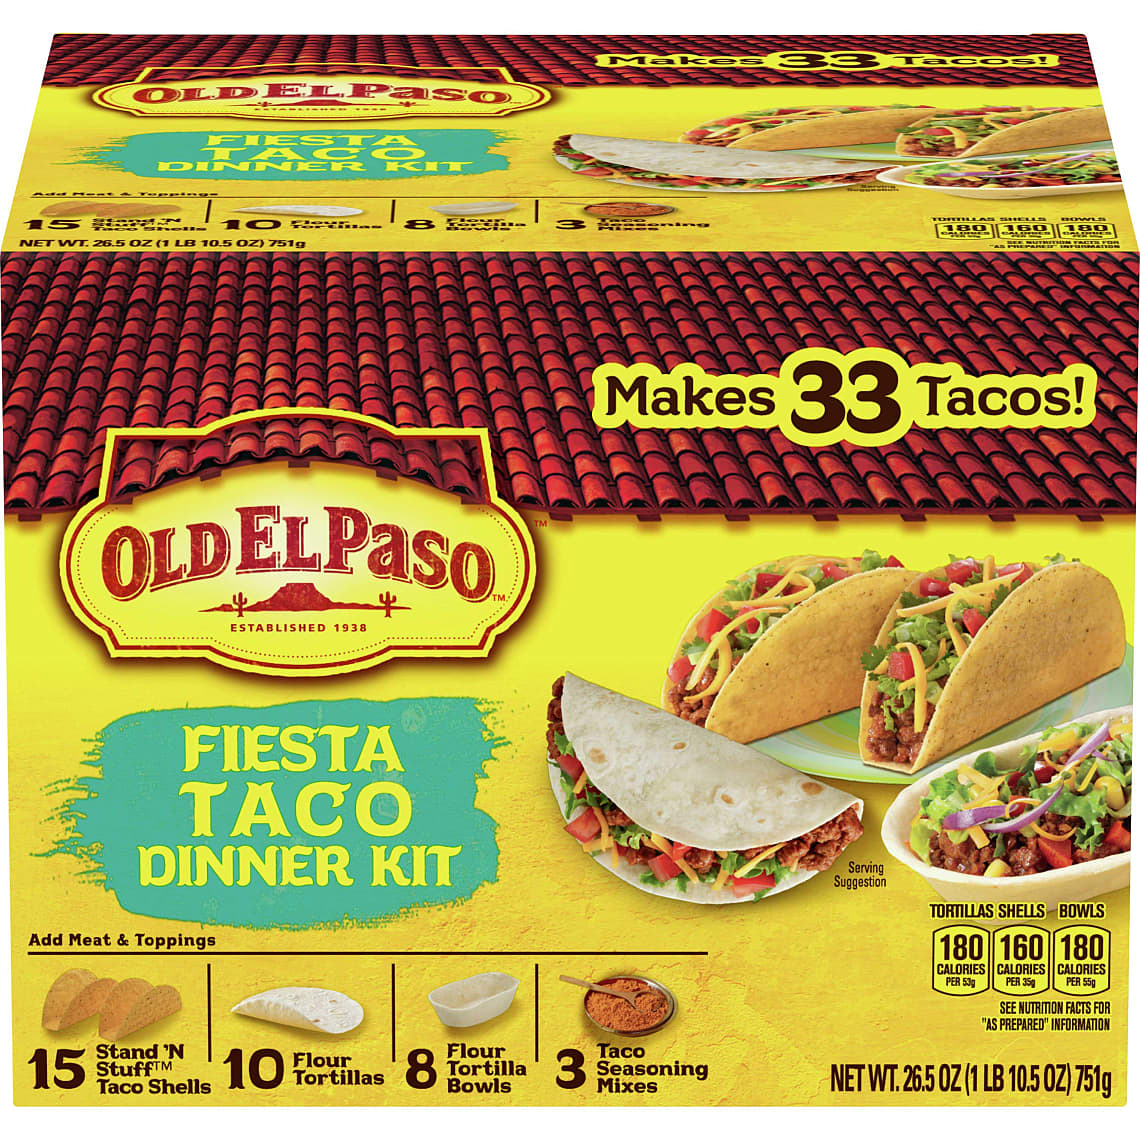 Old El Paso Fiesta Taco Dinner Kit